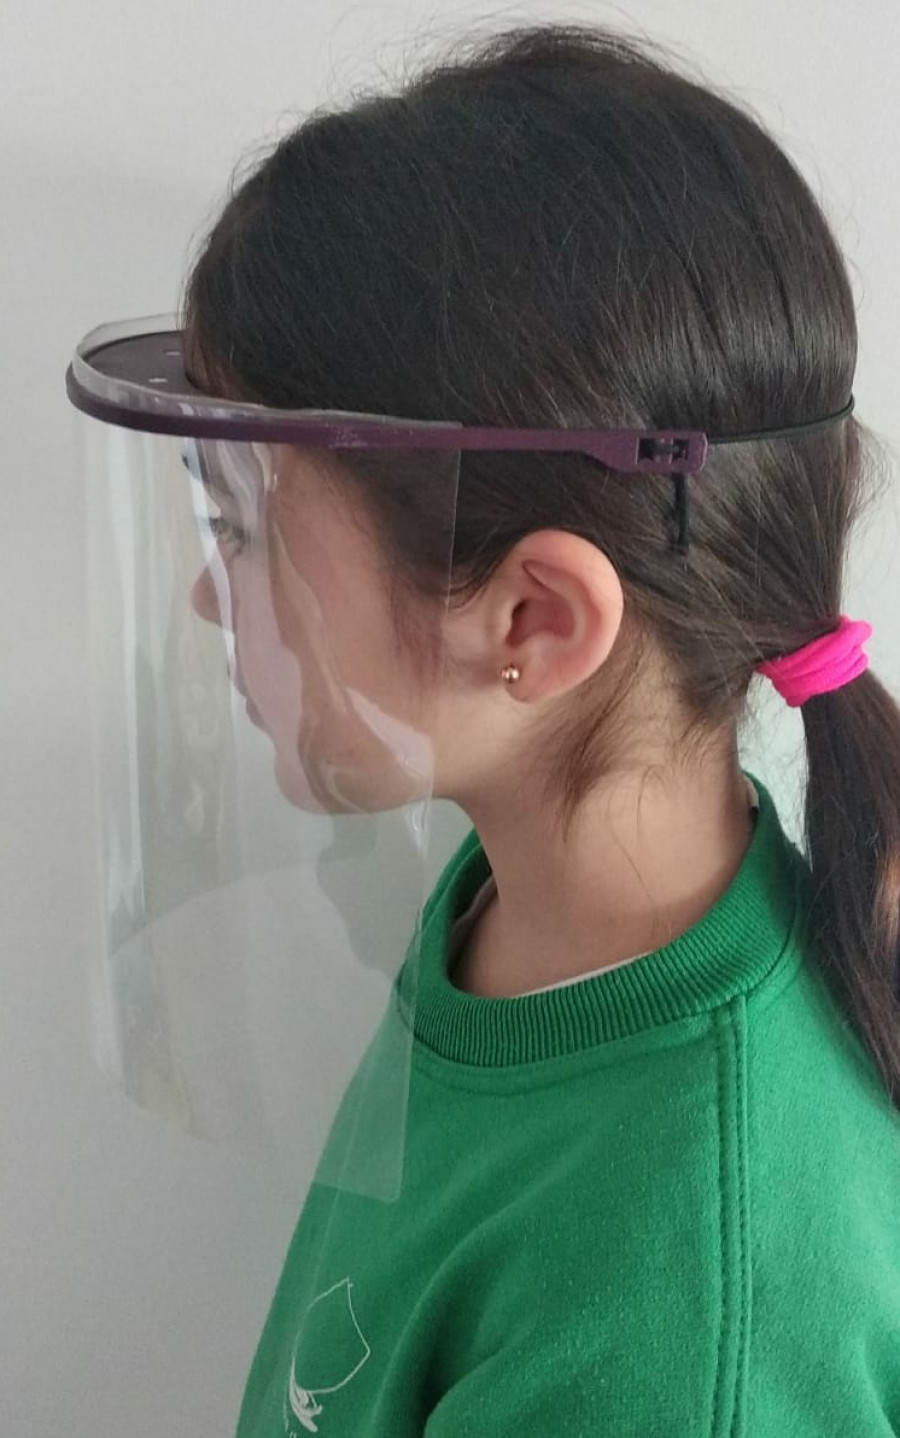 Una ribeirense de 10 años elabora pantallas protectoras con impresora 3D que regala a personal sanitario